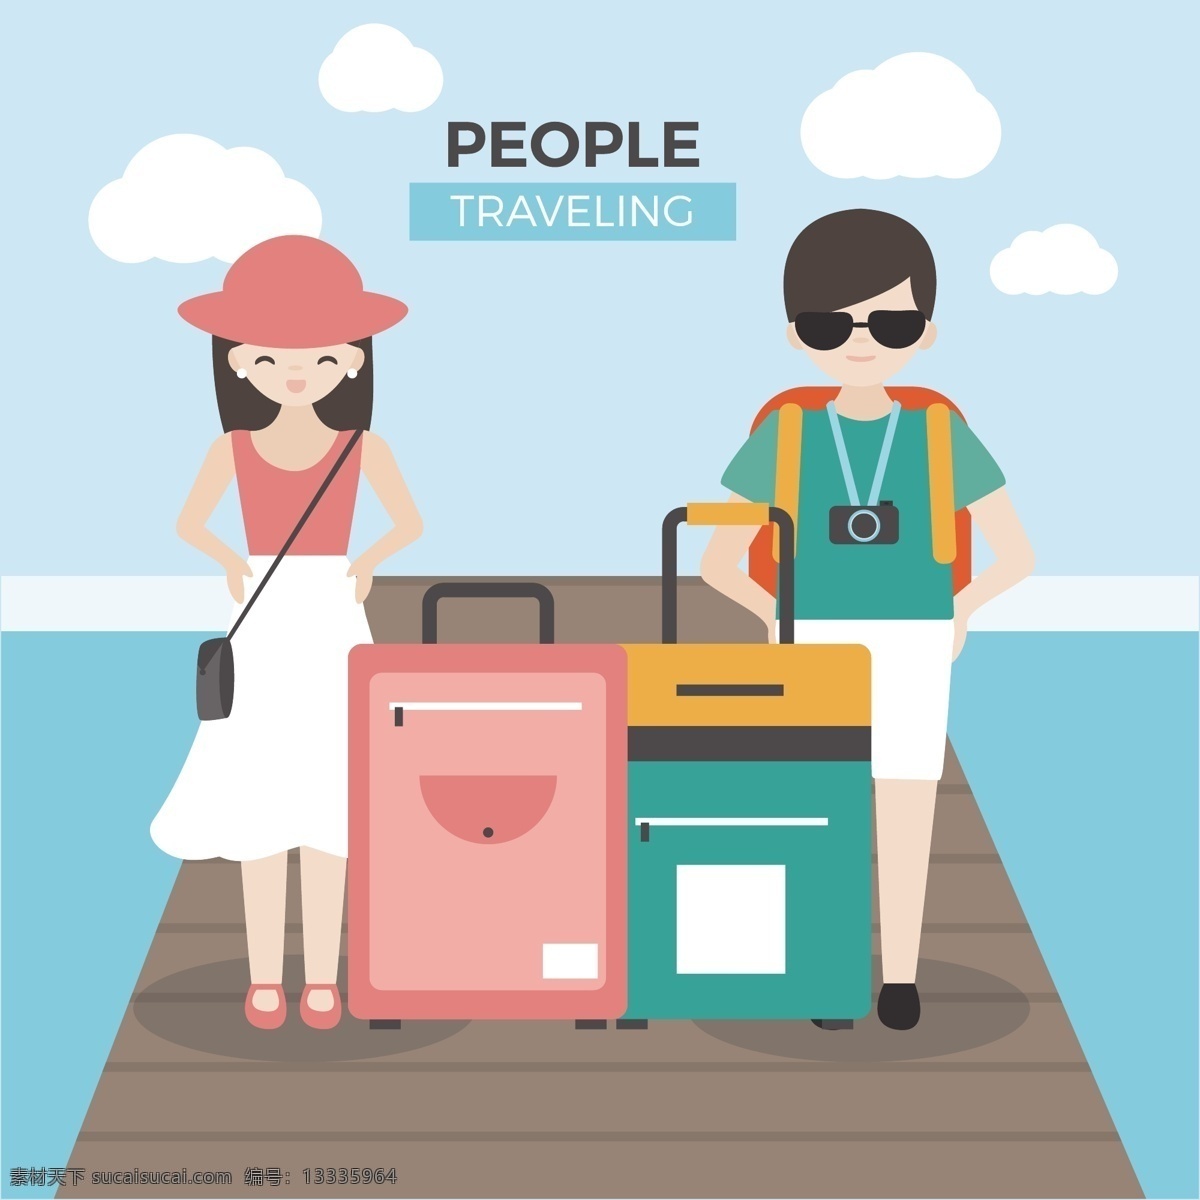 扁平化 旅行 情侣 人物 元素 行李箱 拉杆箱 创意 出游 旅游 装饰元素 旅游元素设计 元素设计 旅游季 游世界 旅游元素 环球旅行 扁平化元素